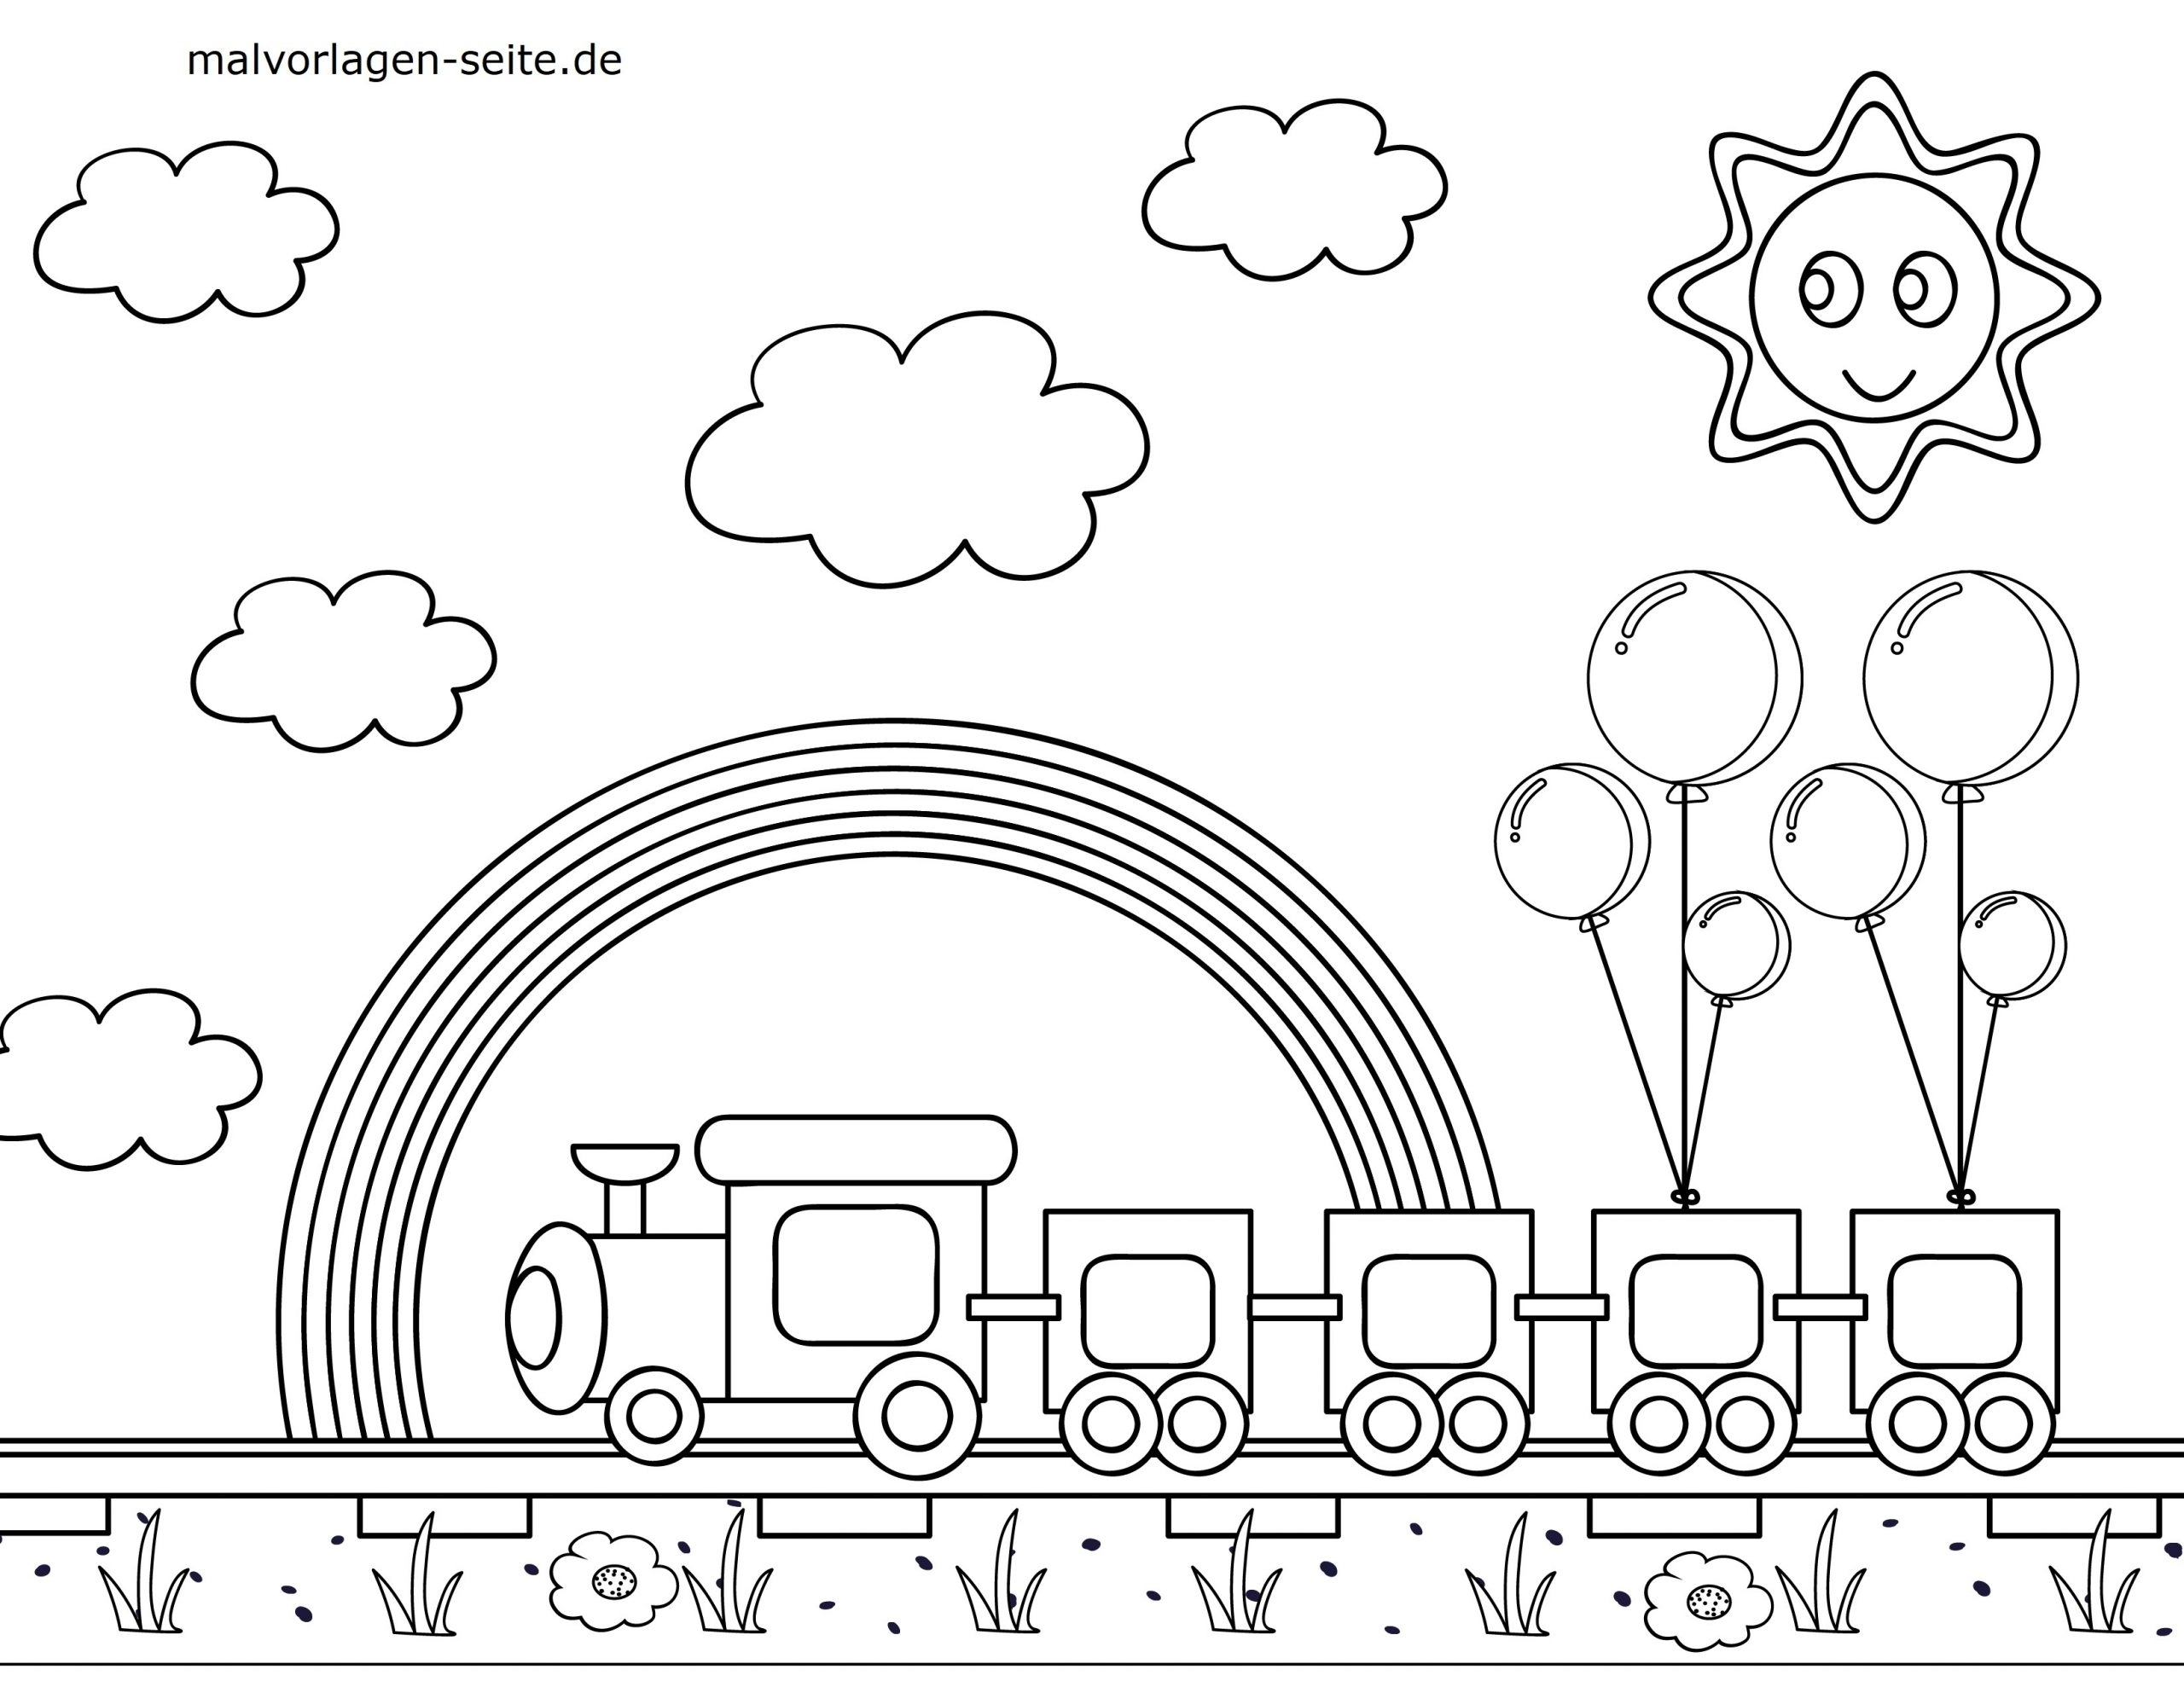 Нарисовать детскую железную. Поезд картинка для детей раскраска. Паровоз раскраска для детей. Раскраска вагончики паровозика. Паровозик раскраска для детей.